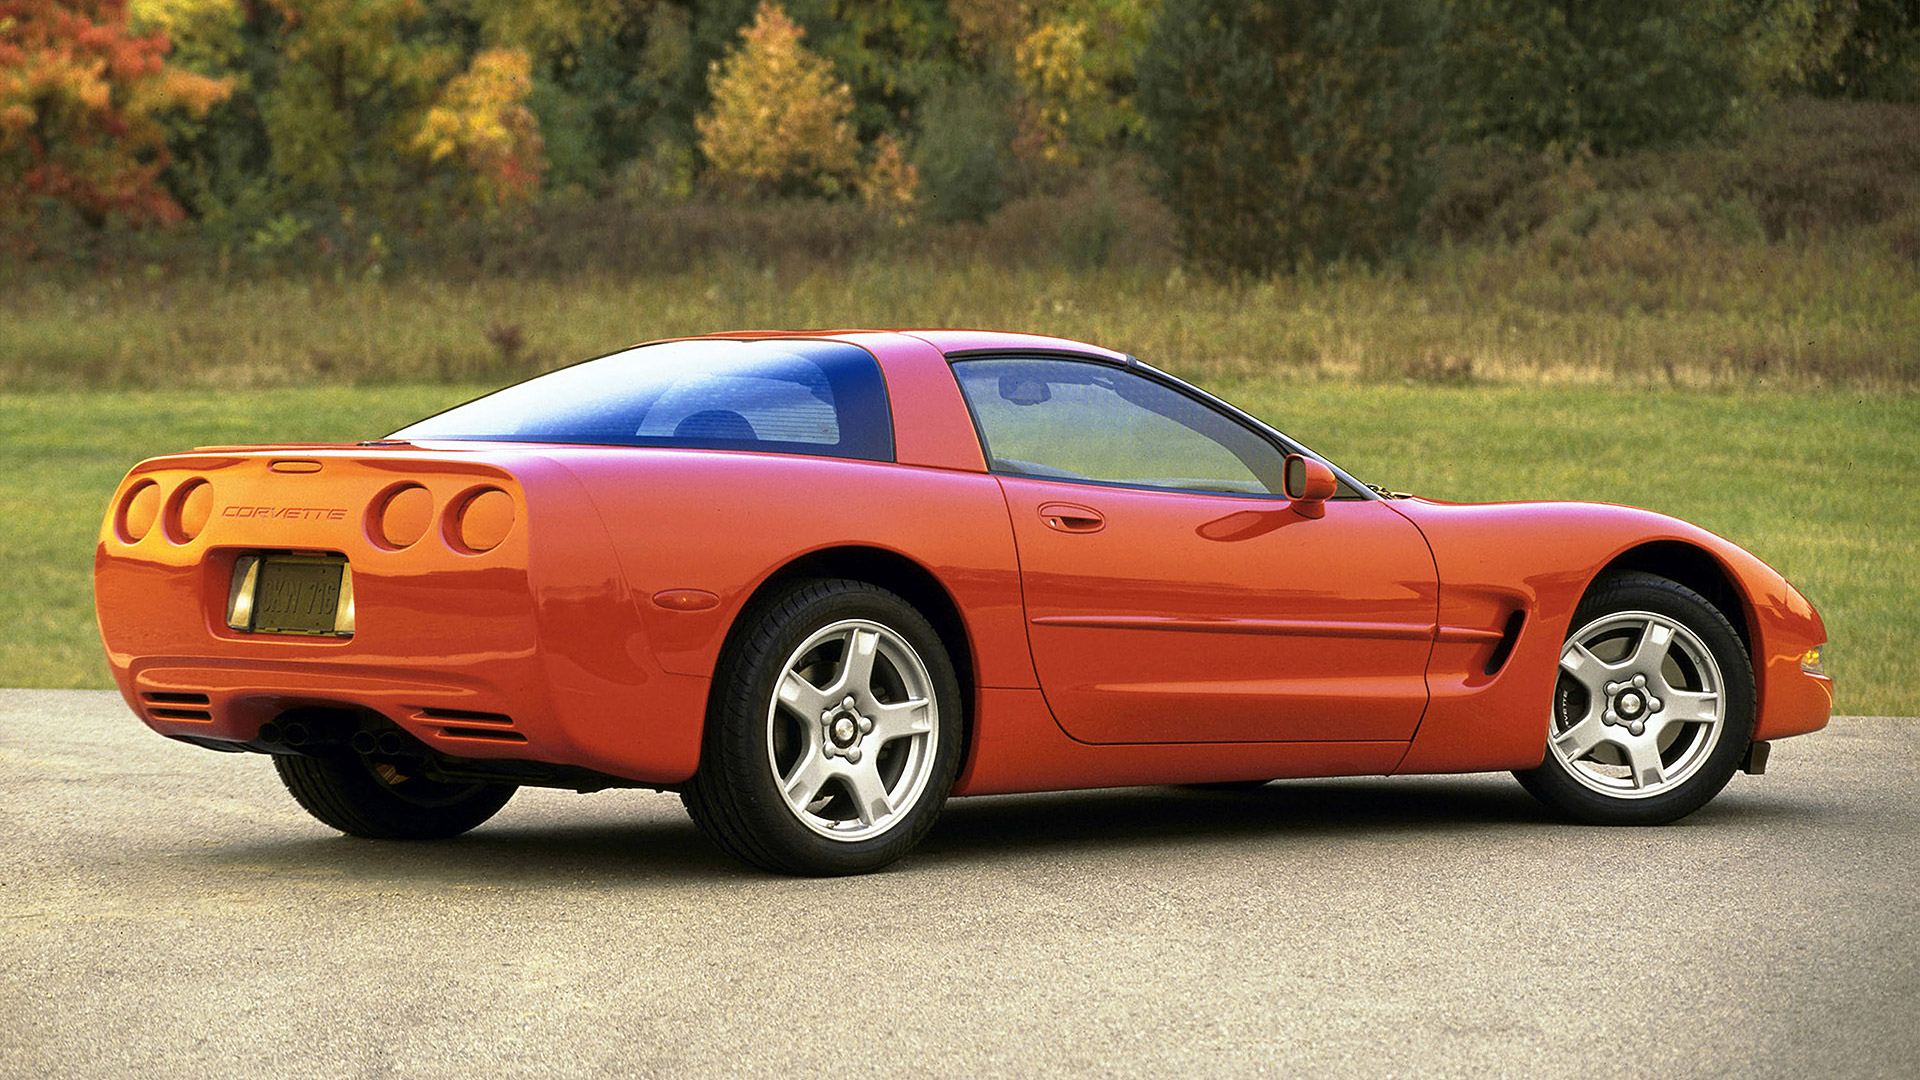  1997 Chevrolet Corvette Wallpaper.